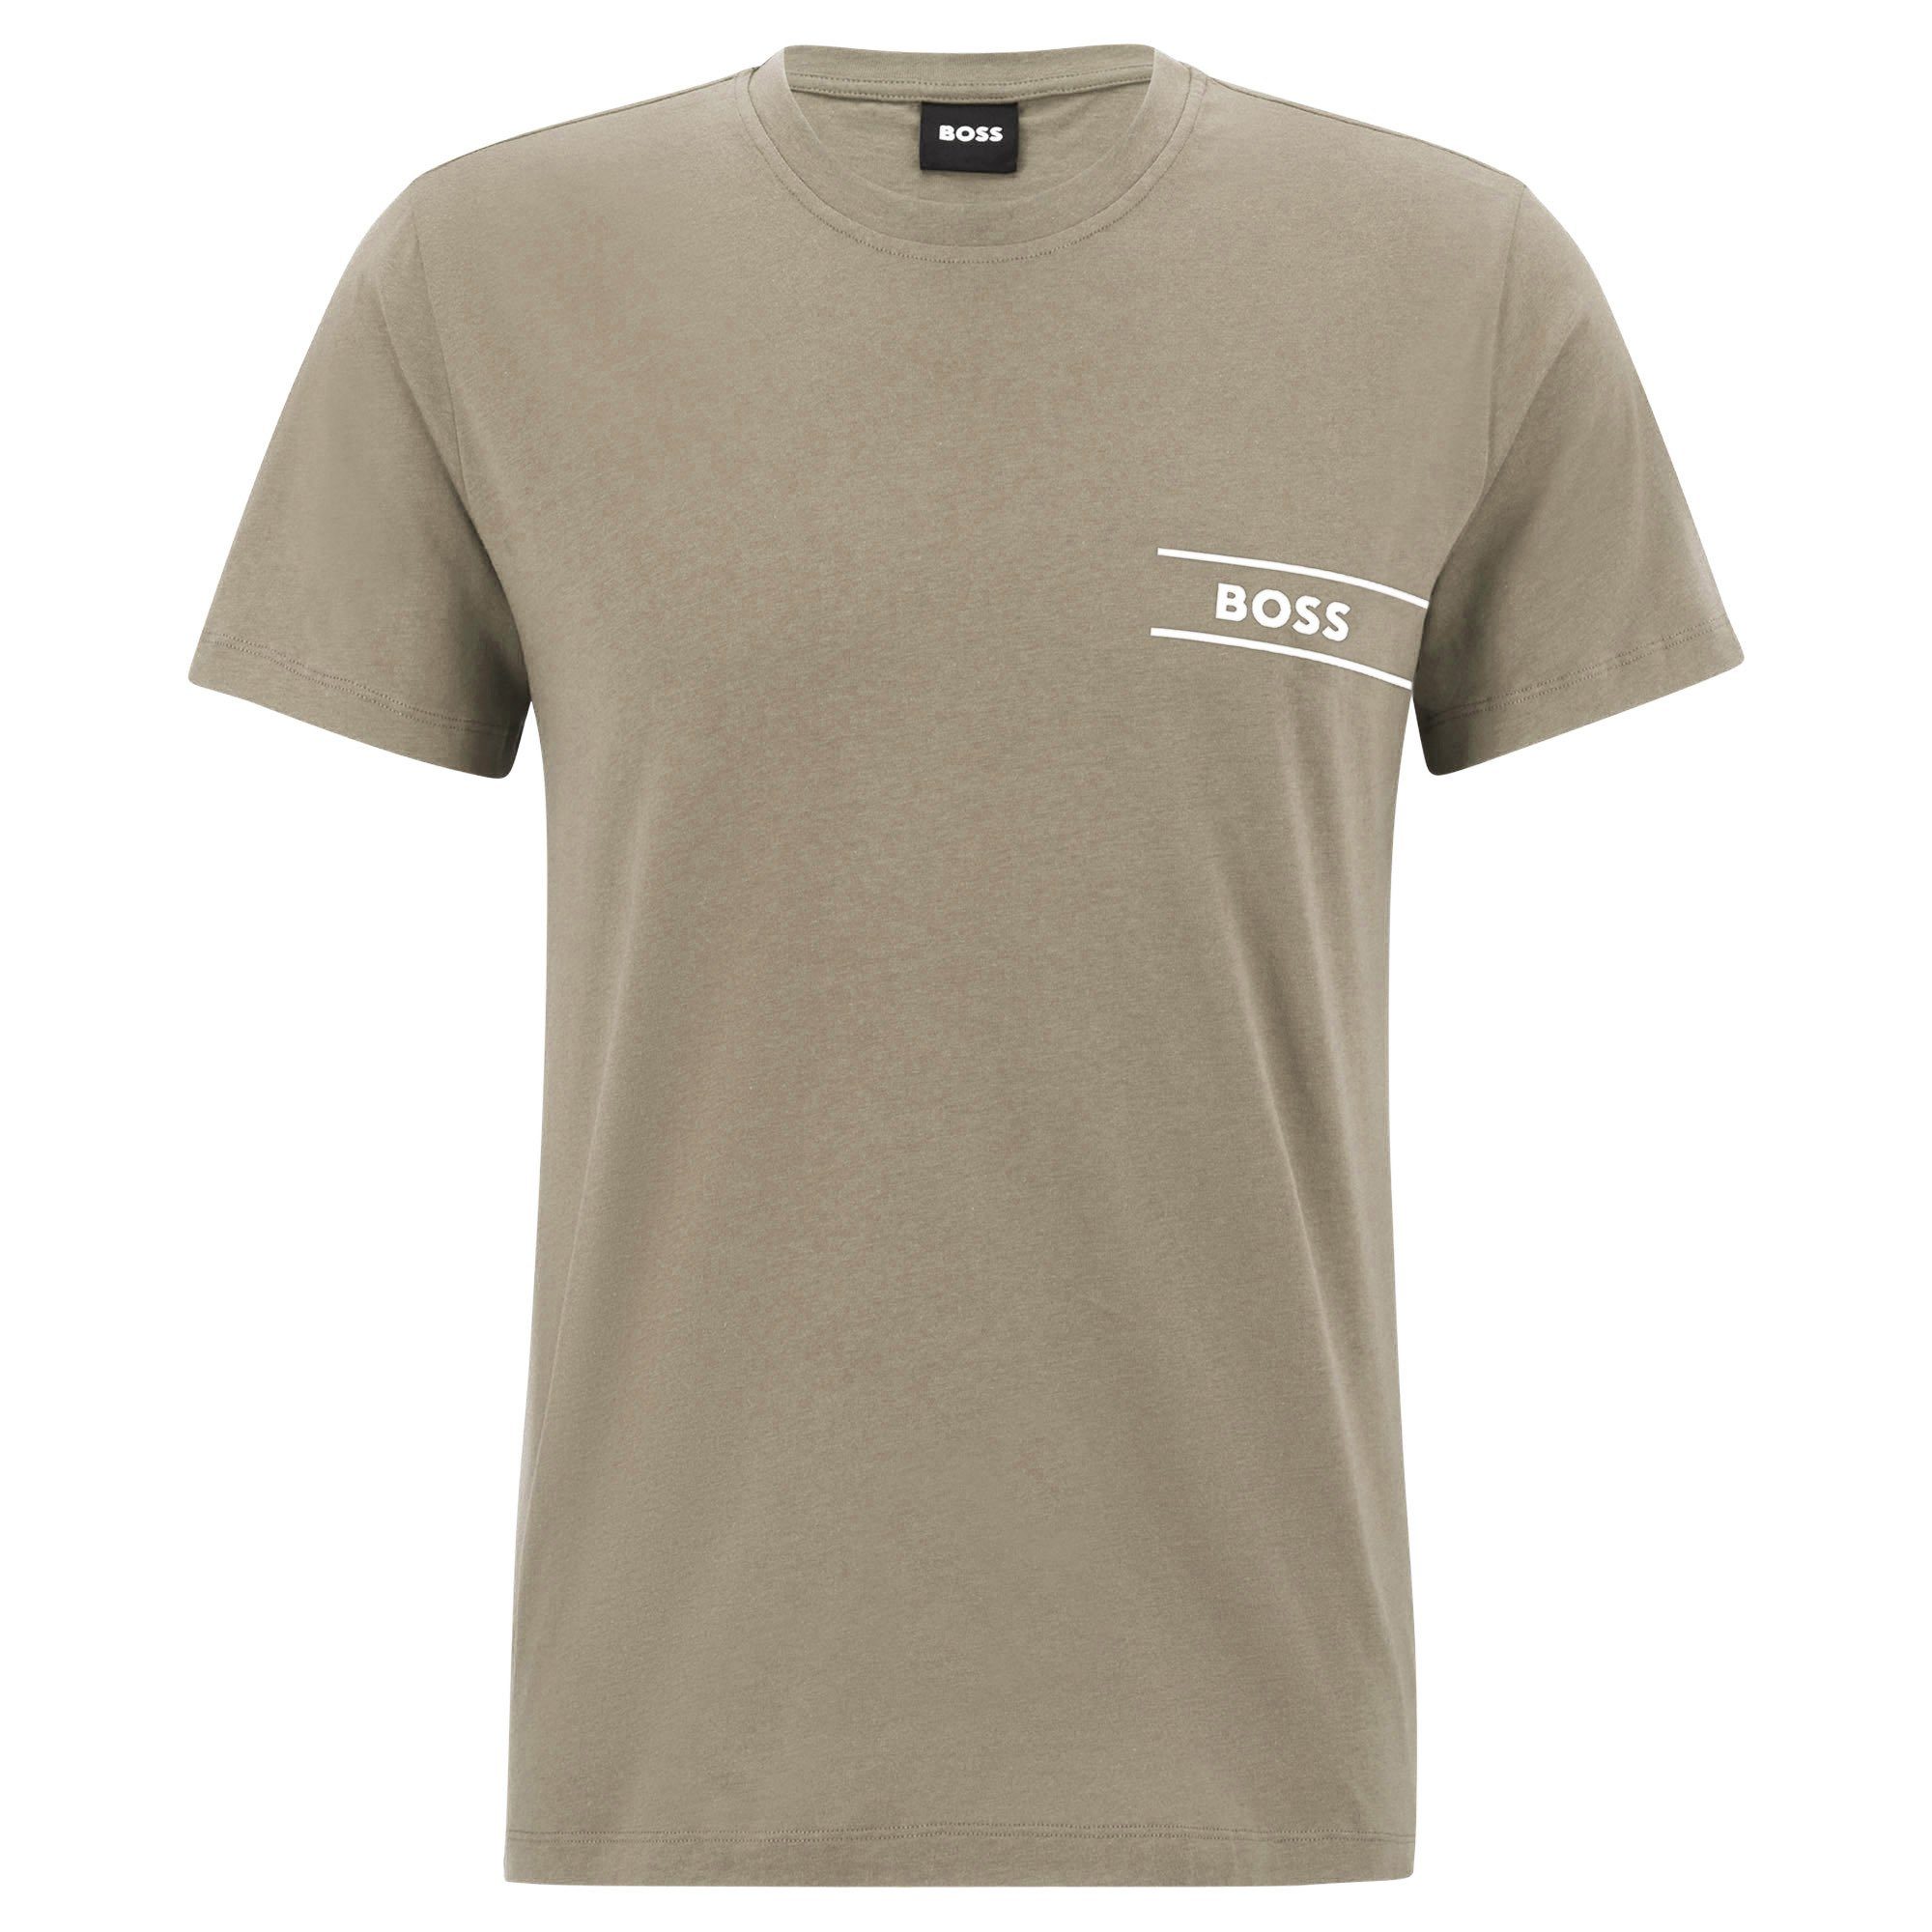 BOSS T-Shirt Herren T-Shirt - RN 24, Kurzarm, Rundhals